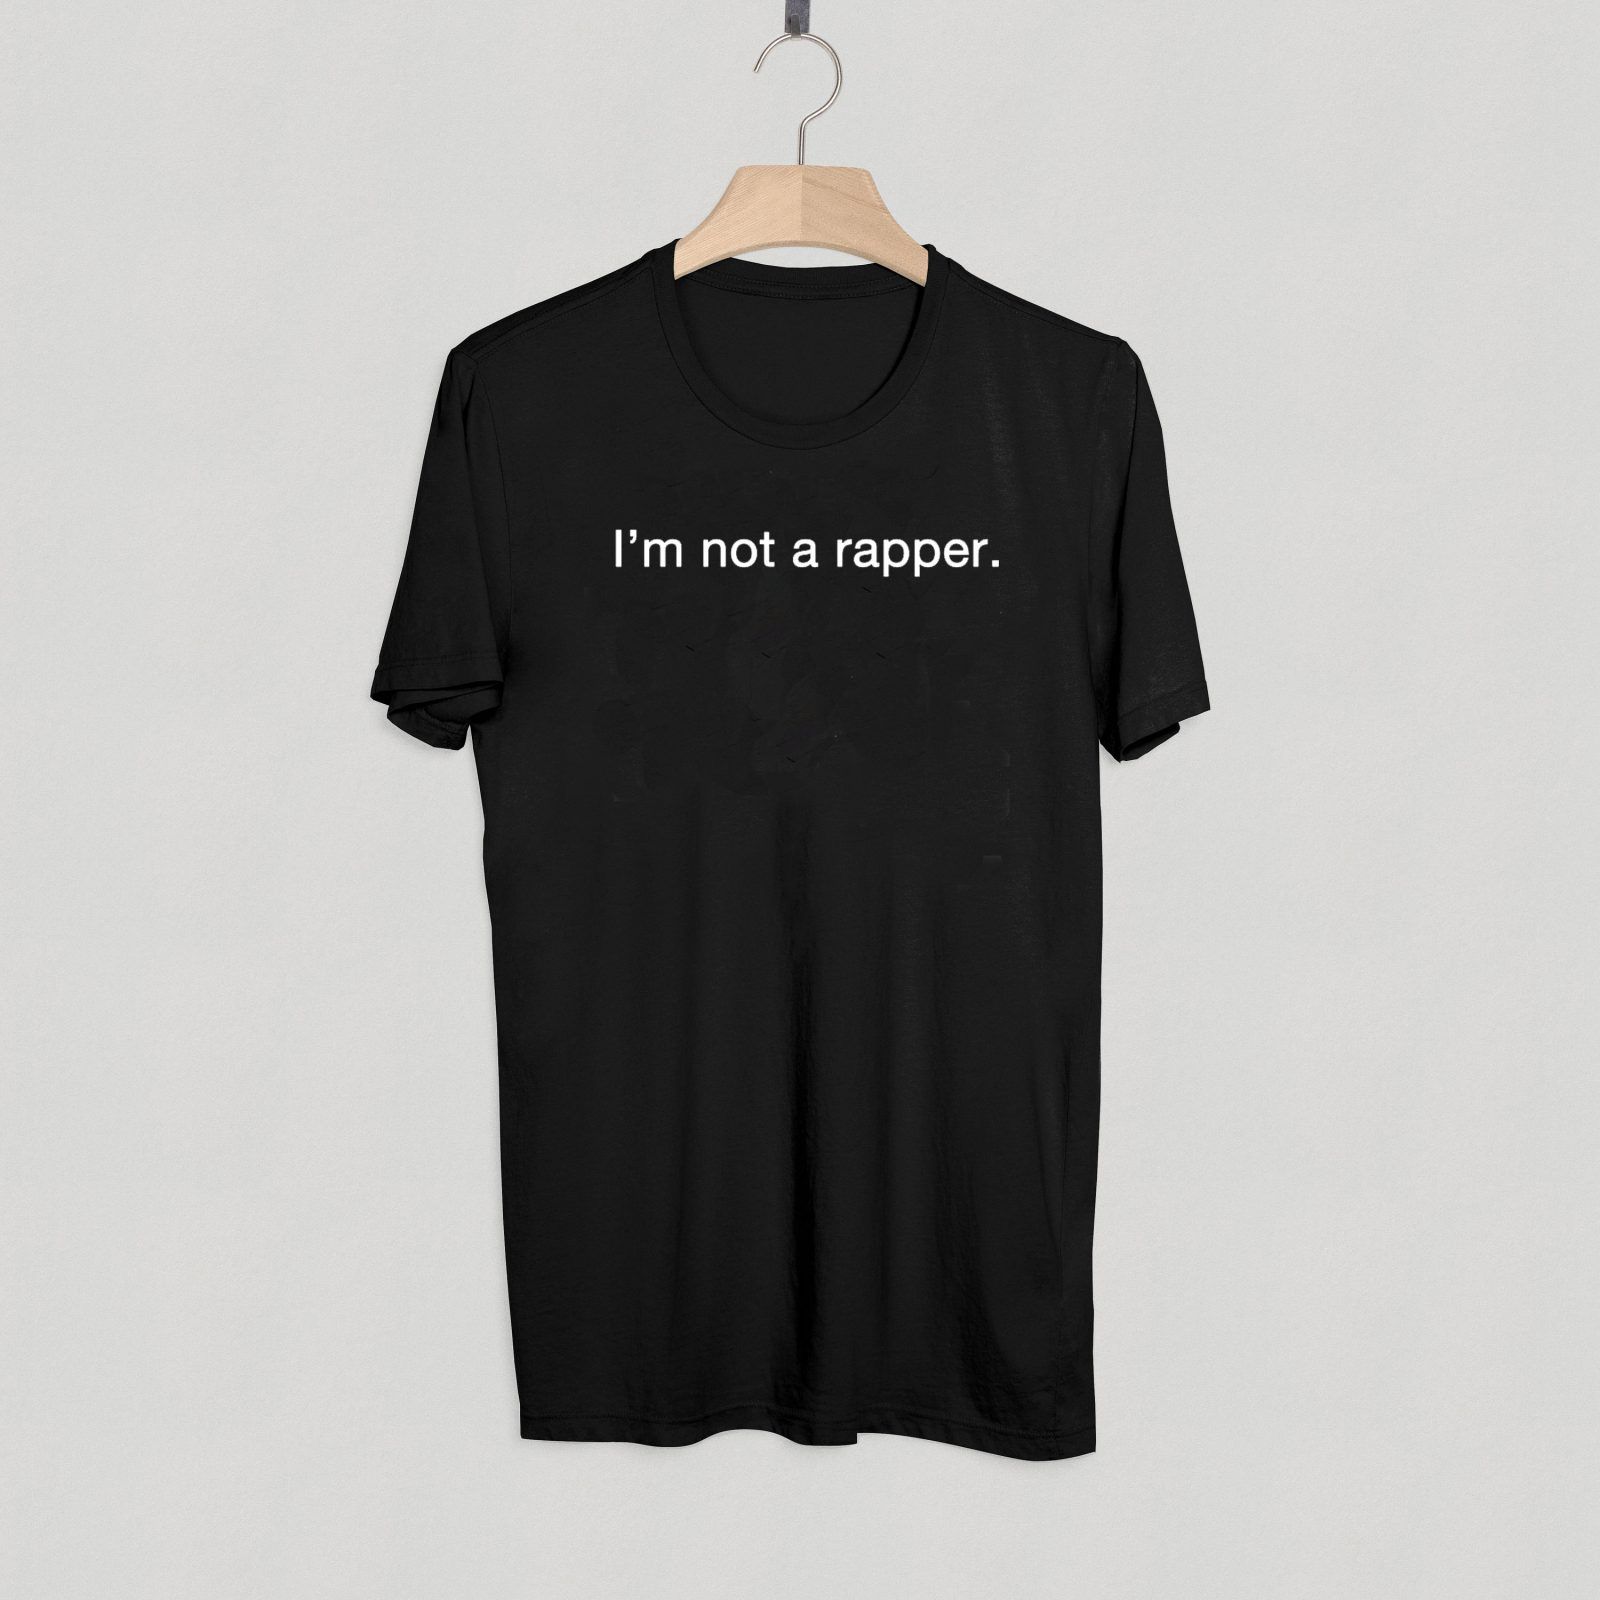 I'm Not Rapper T shirt Adult Unisex Size S-3XL